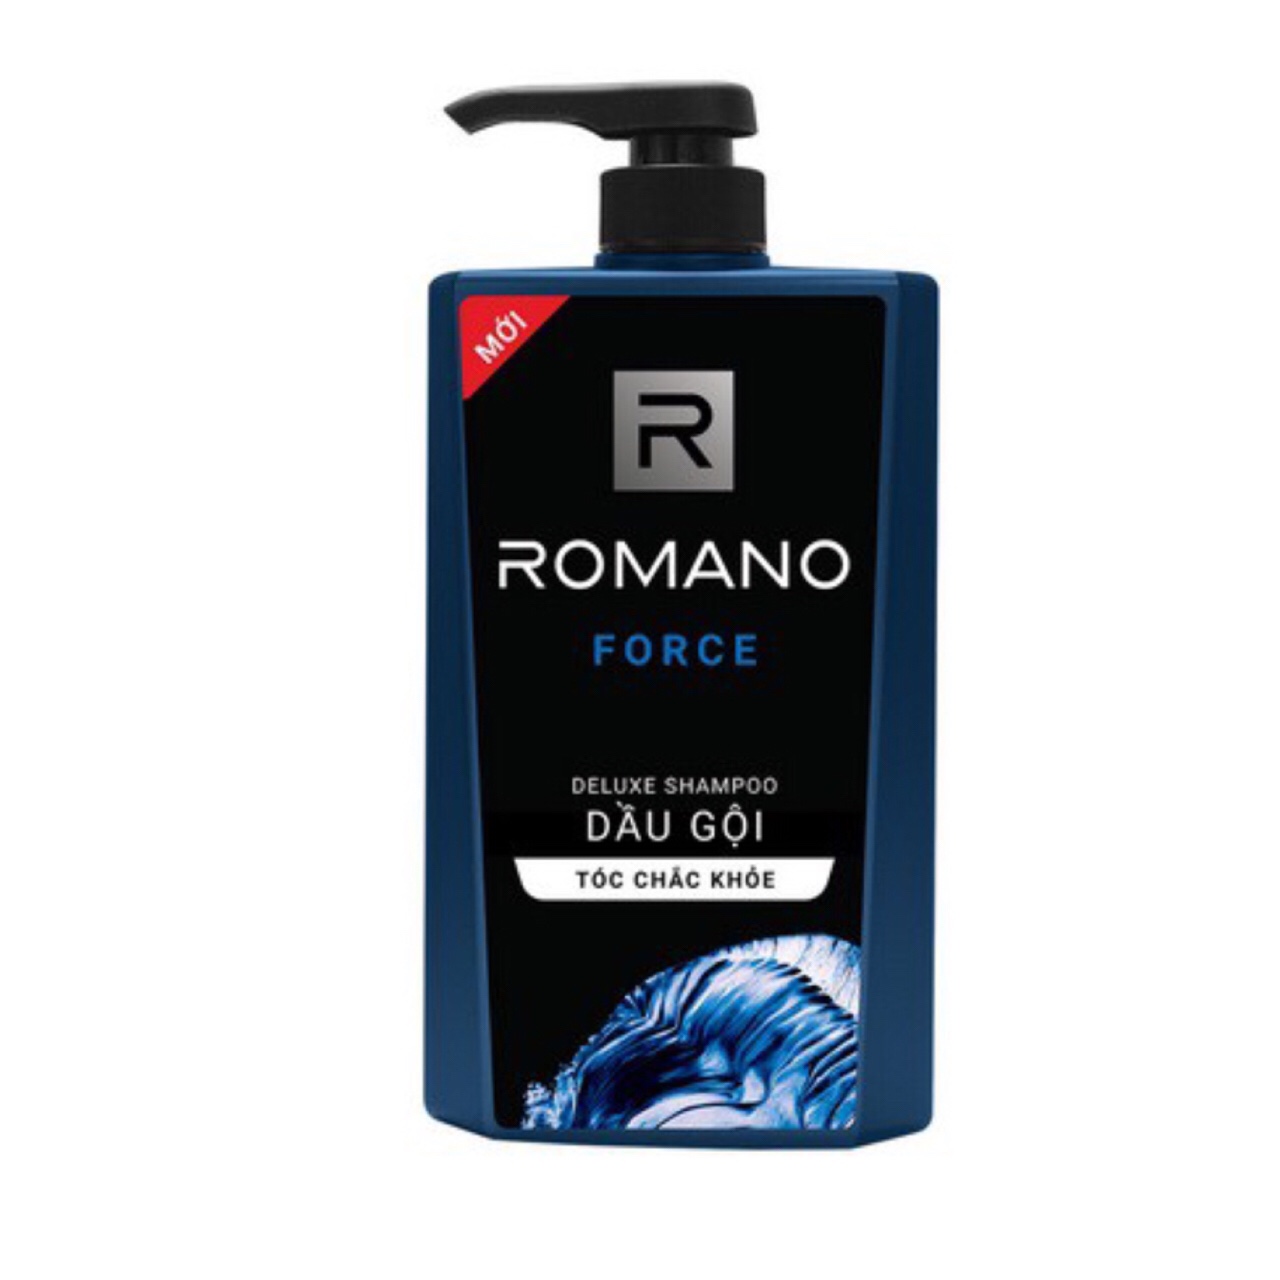 Bộ Dầu Gội và Sữa Tắm cho nam Romano Force (650ml*2) +Tặng 5 gói dâu gội Romano